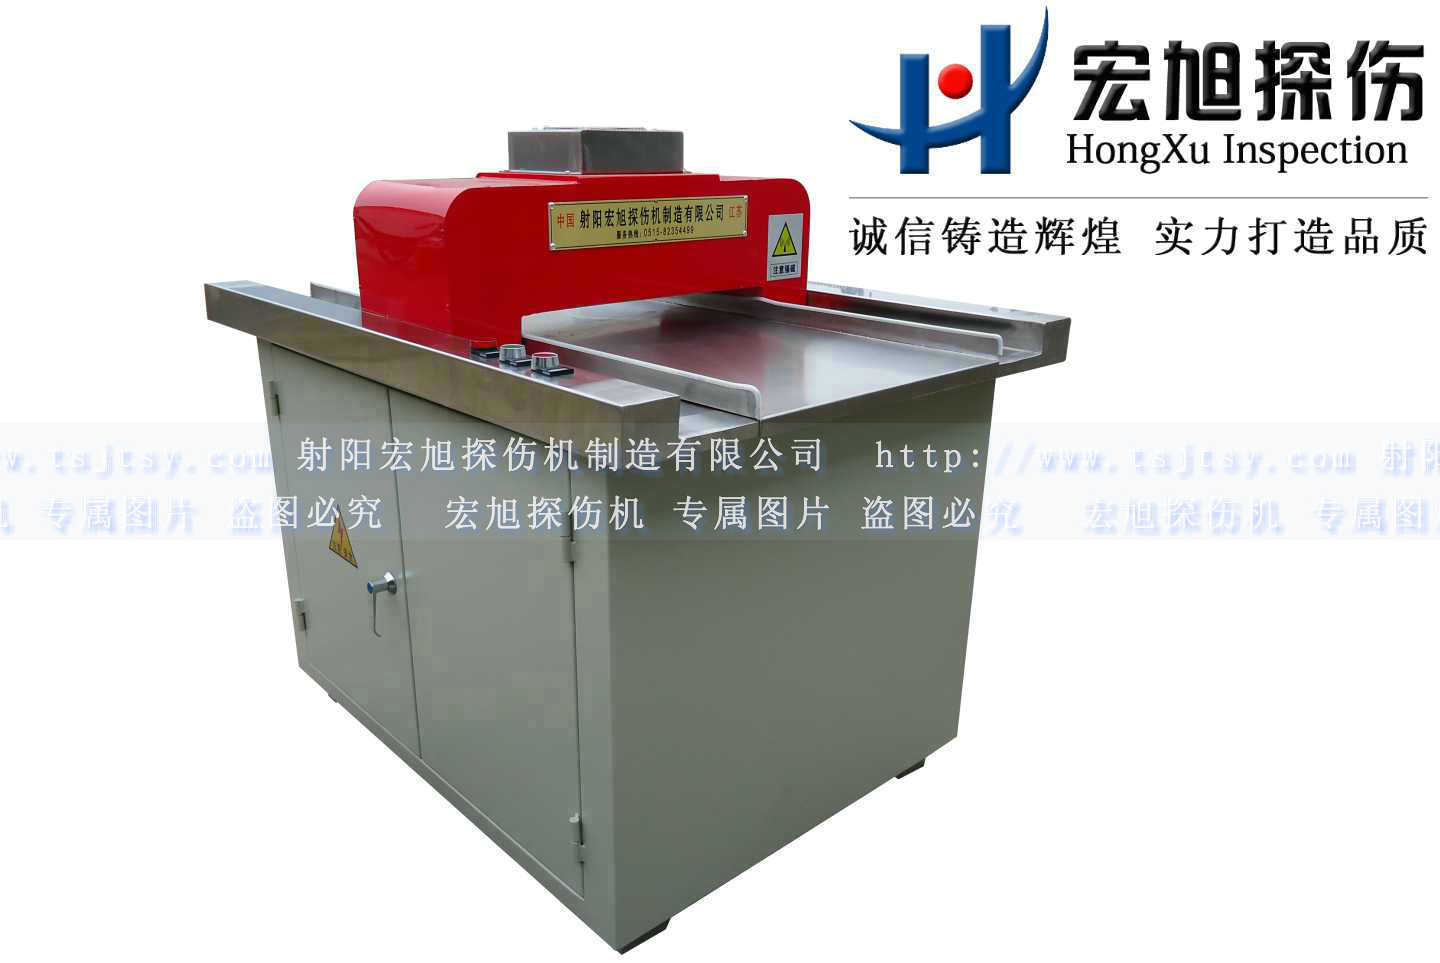 產品名稱：微型充退磁機
產品型號：HCTD-250
產品規格：1000mm*800mm*1200mm